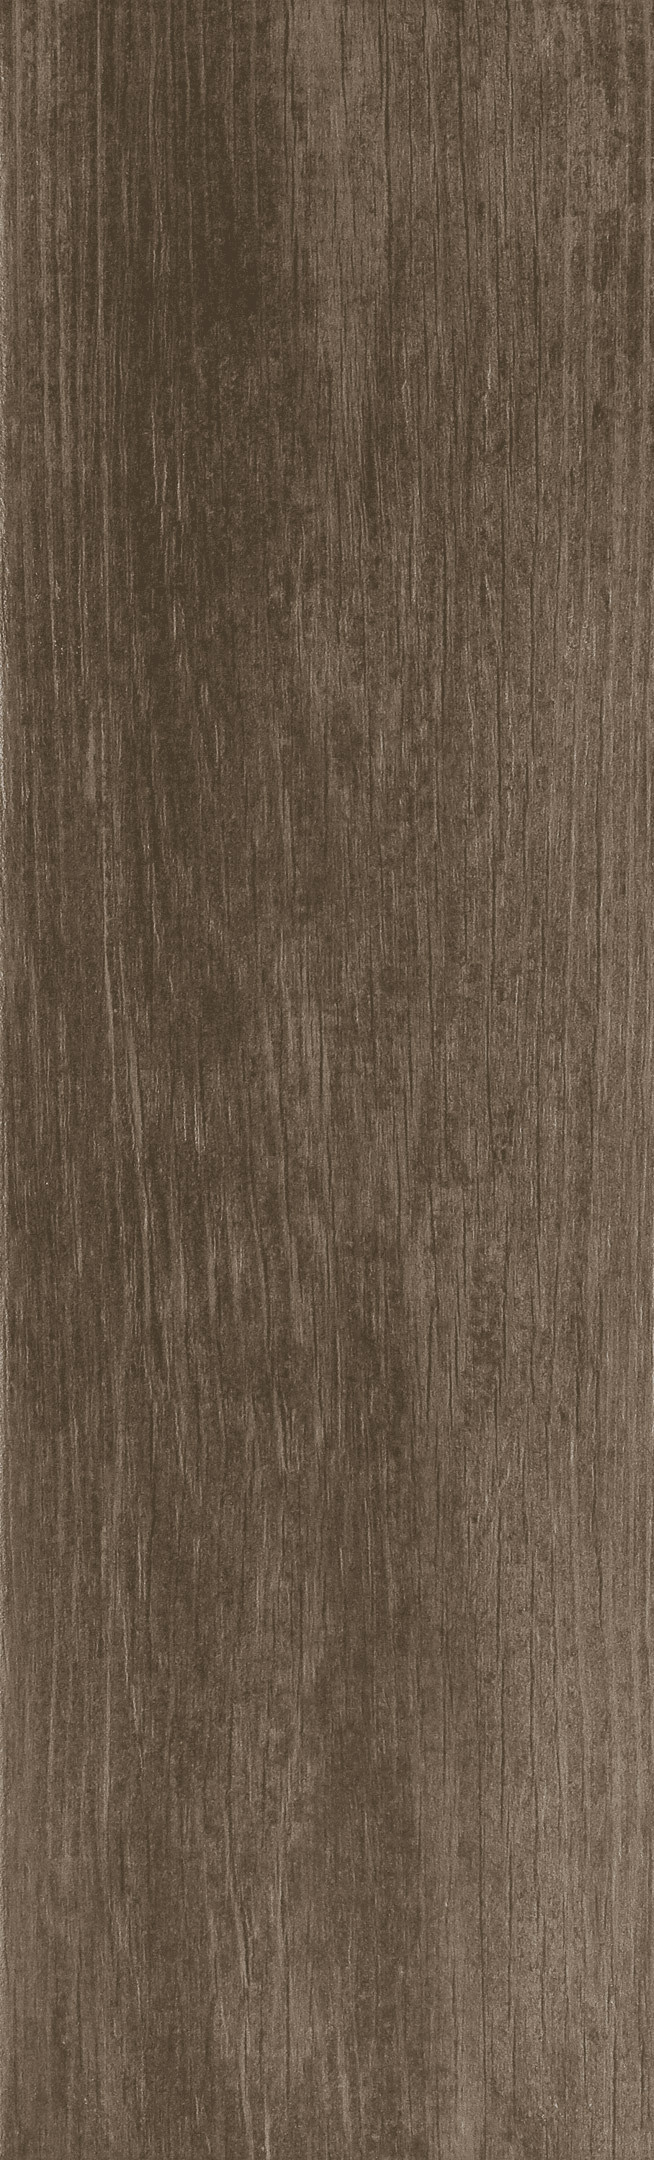 фото Керамогранит cersanit finwood темно-коричневый матовый 60х18,5 см (11 шт.=1,216 кв.м)